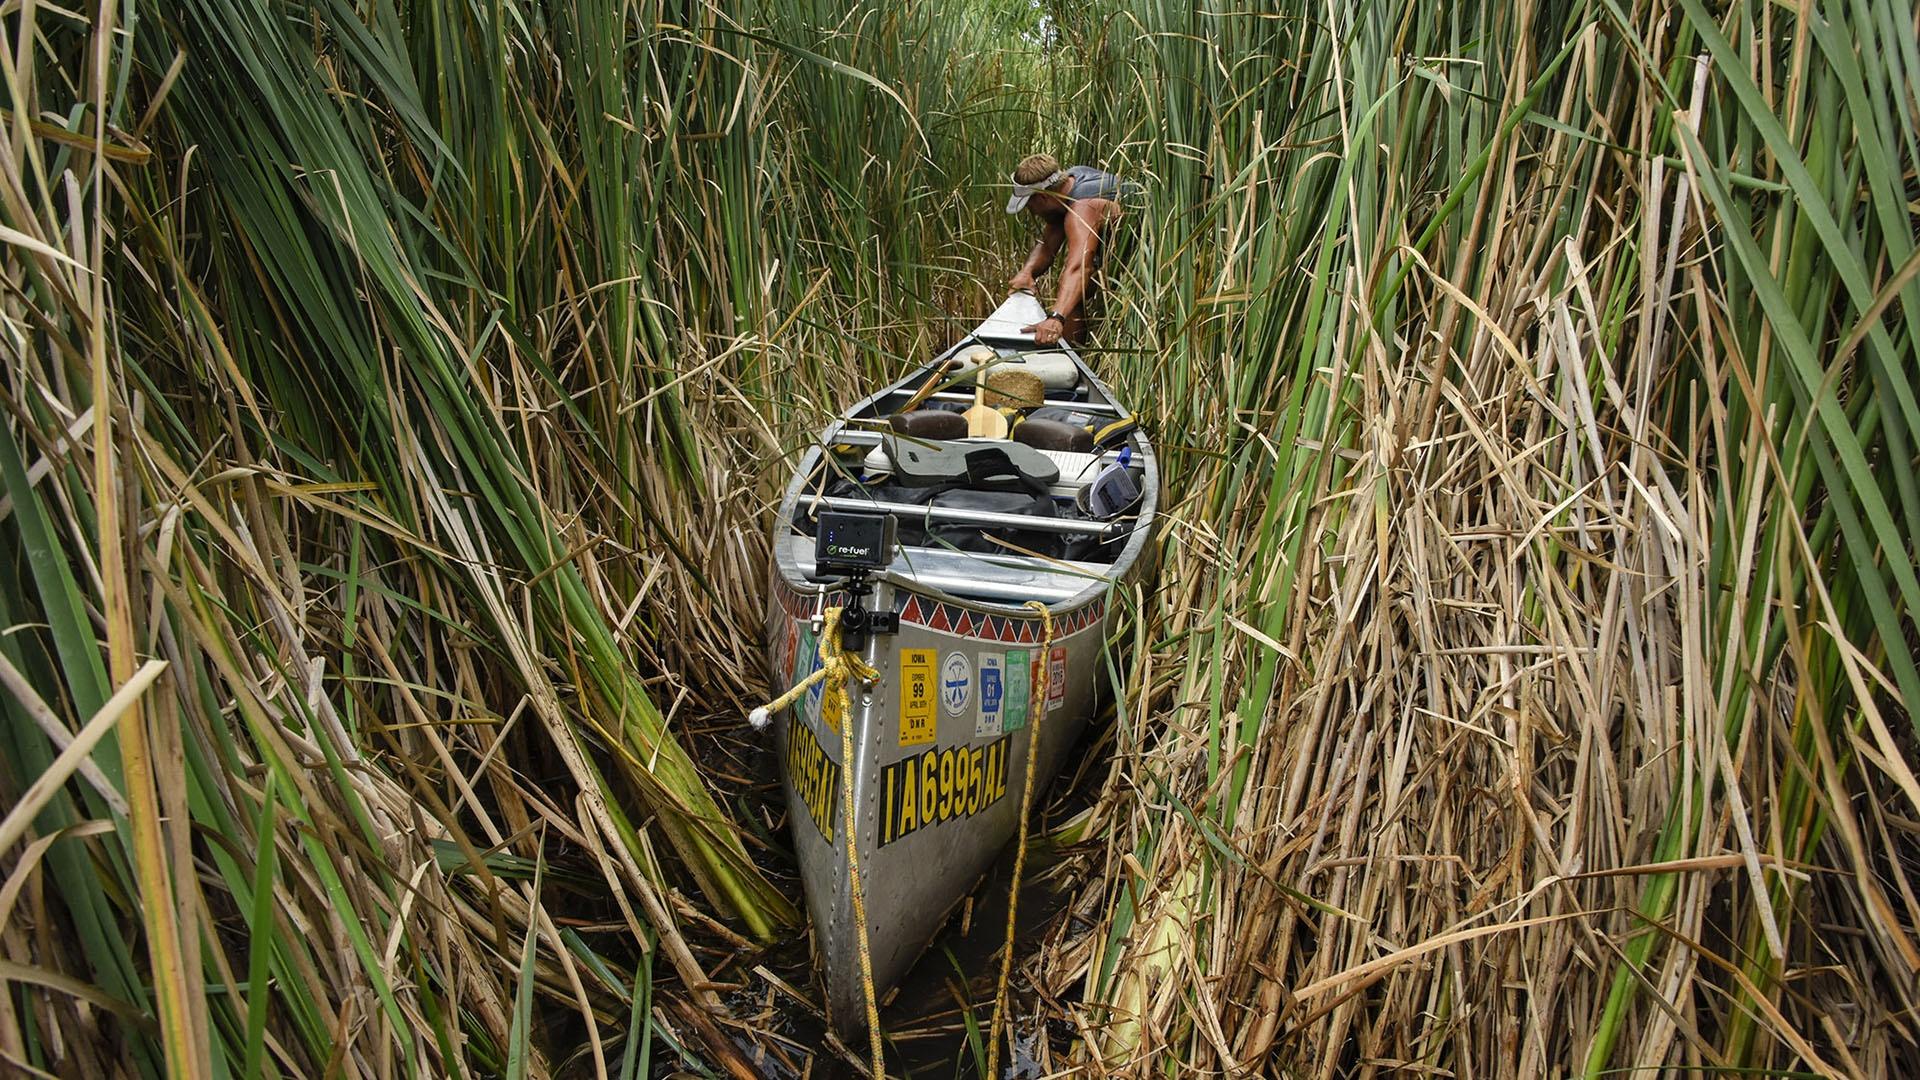 Peter Stegen pulls a canoe through dense reeds.